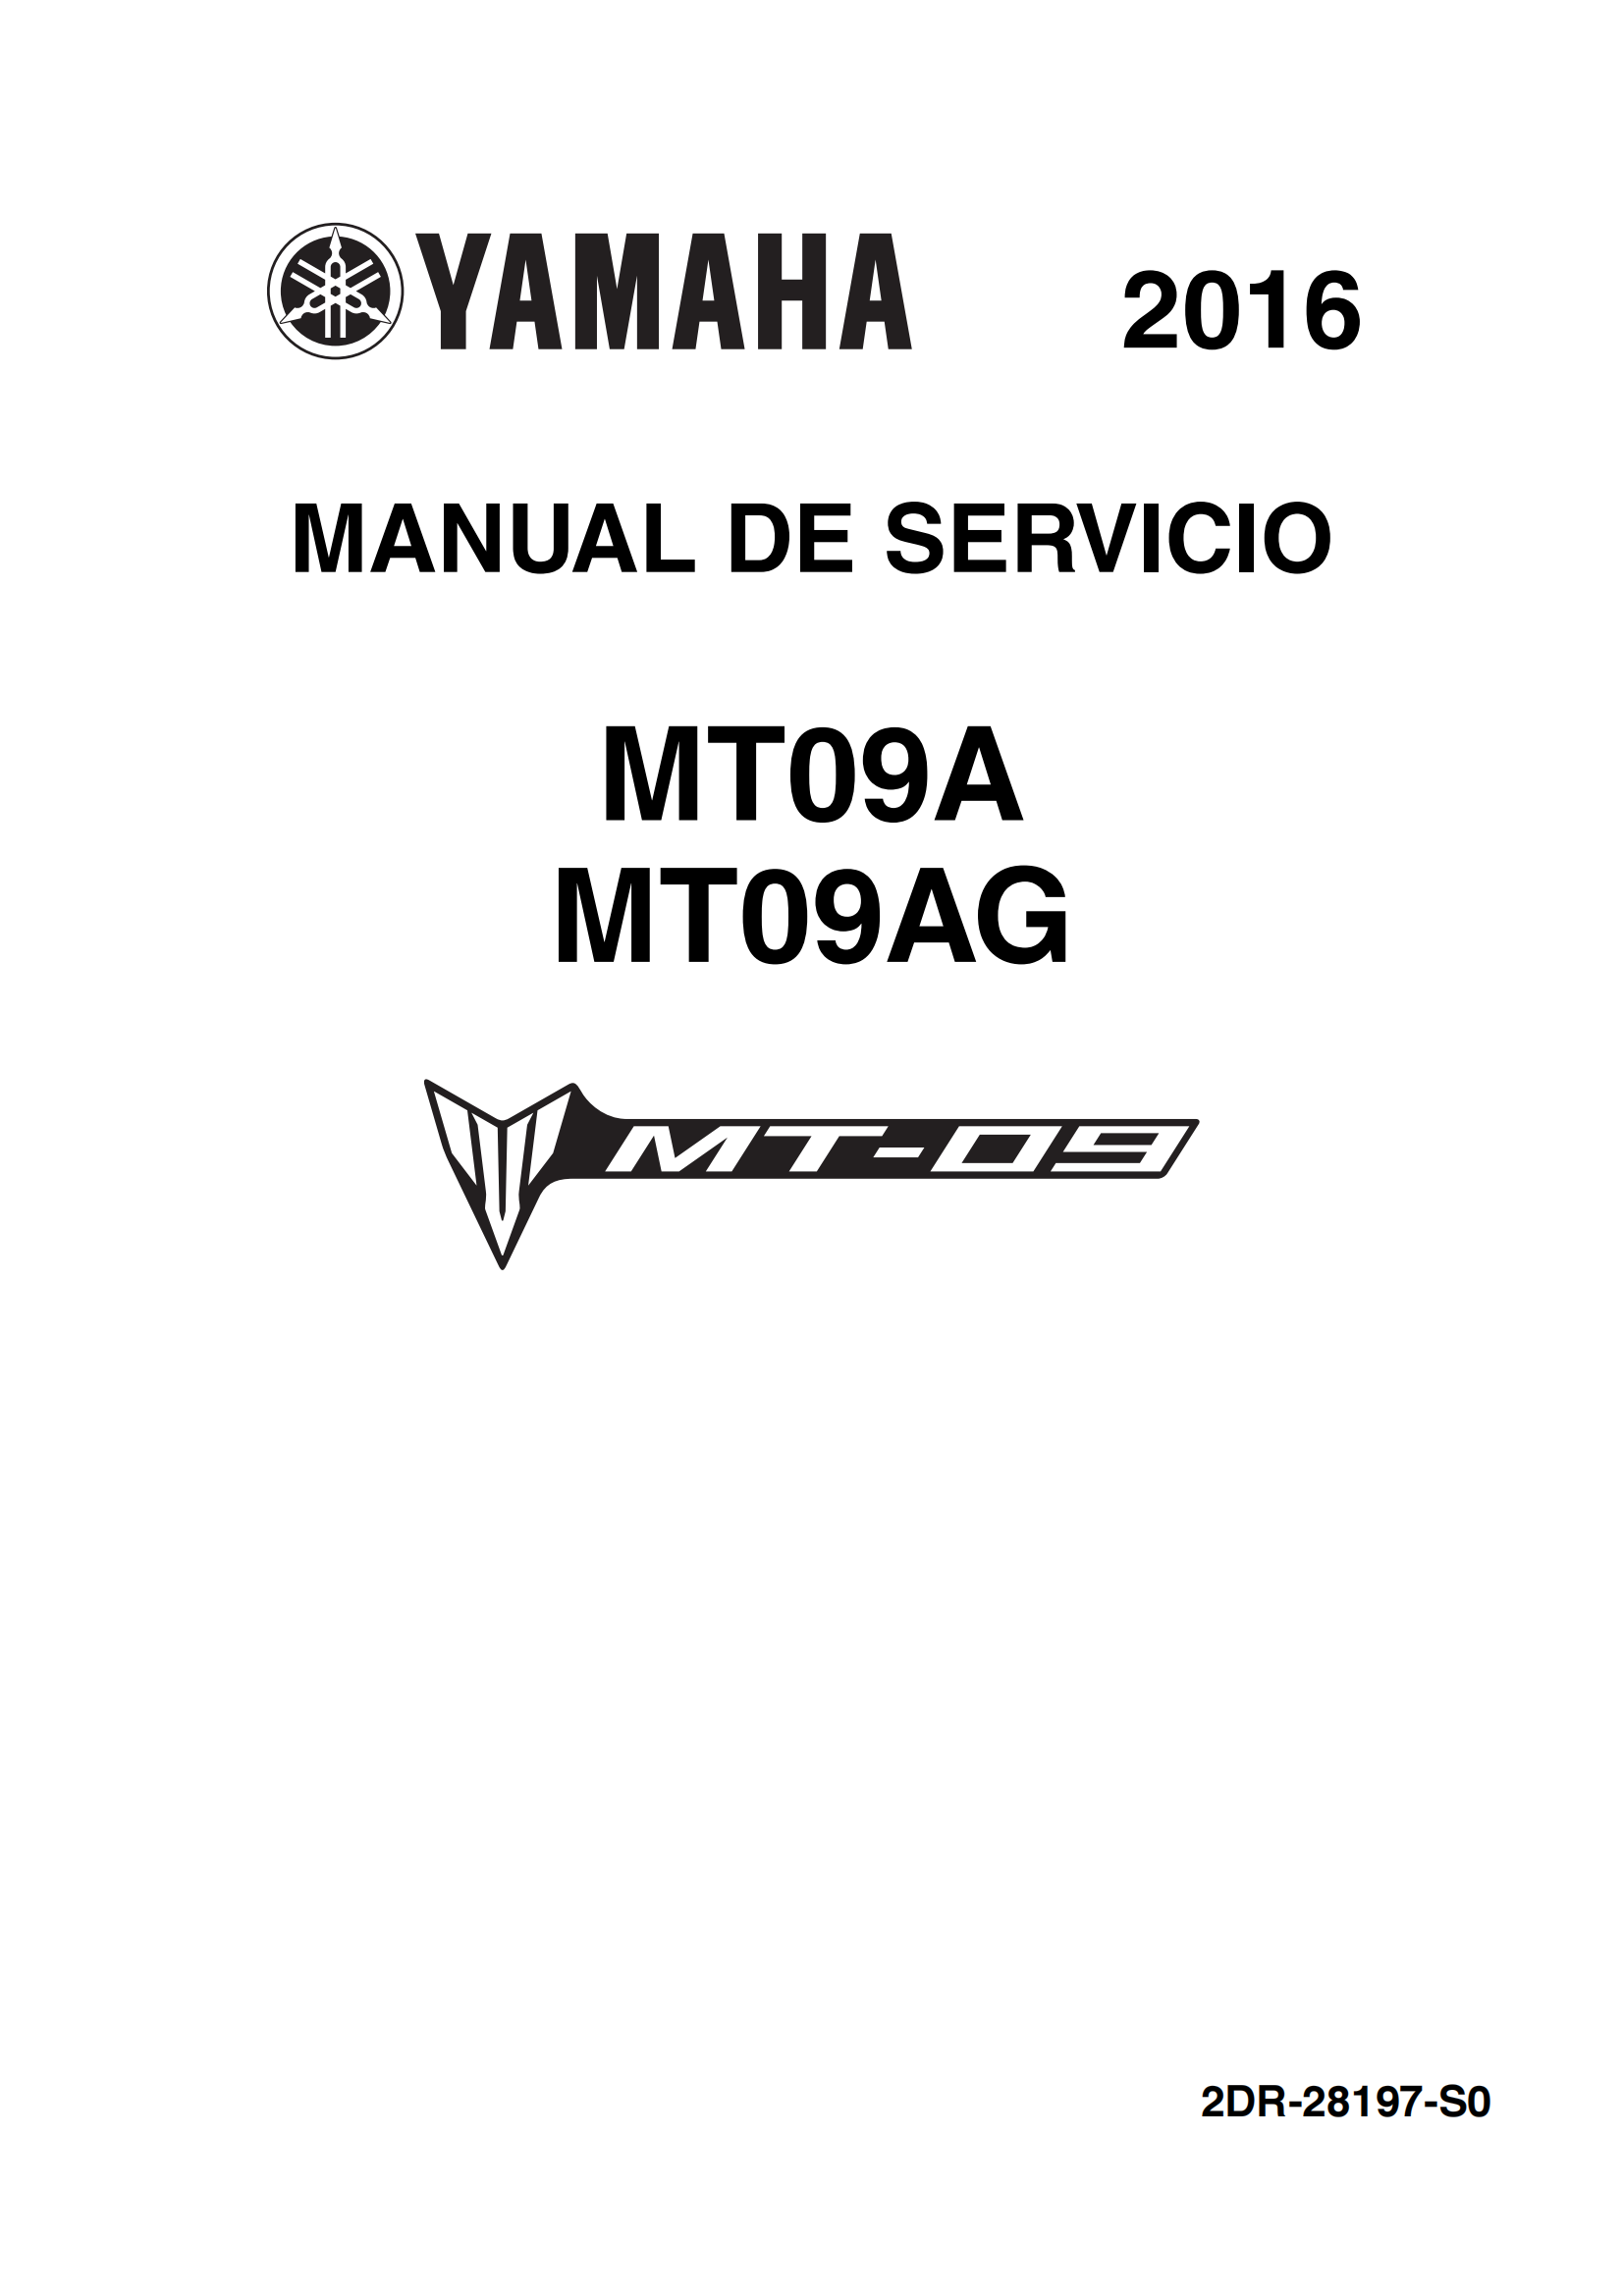 原版西班牙语2016-2019年雅马哈mt09维修手册通用fz09维修手册插图